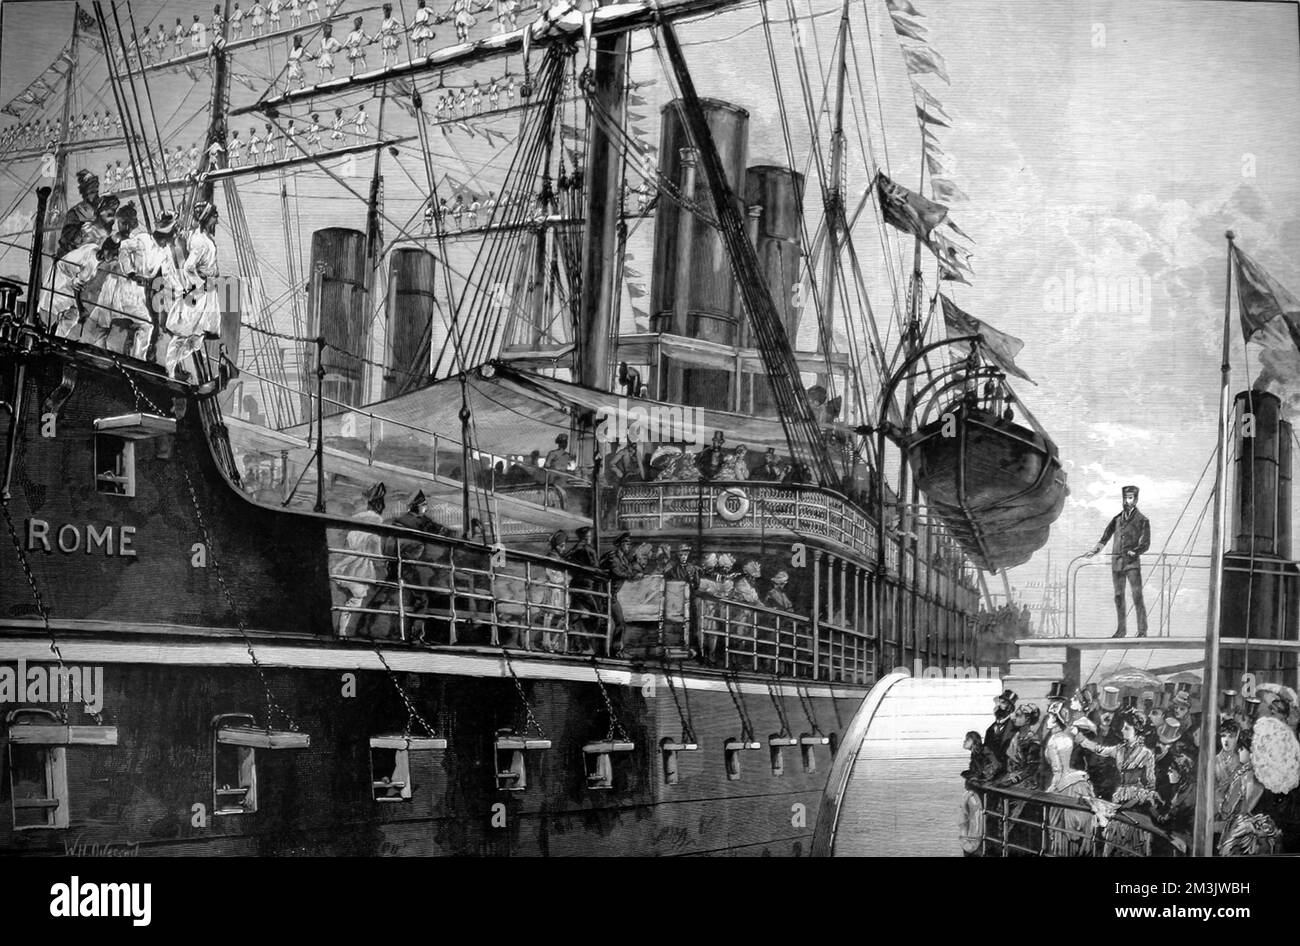 Le P.&O. navire à vapeur 'Rome' situé dans les quais Royal Albert, avec son équipage lascar sur les chantiers, 1886. Les équipages des SS 'Chusan' et 'Paramatta' étaient également en poste dans leurs chantiers (en arrière-plan), en l'honneur de l'arrivée de la 'Rome' avec un grand nombre de visiteurs coloniaux et indiens à bord. À droite, on peut voir le pont et l'entonnoir d'un petit bateau à aubes, venir à la rencontre de la 'Rome' et de ses passagers. Banque D'Images